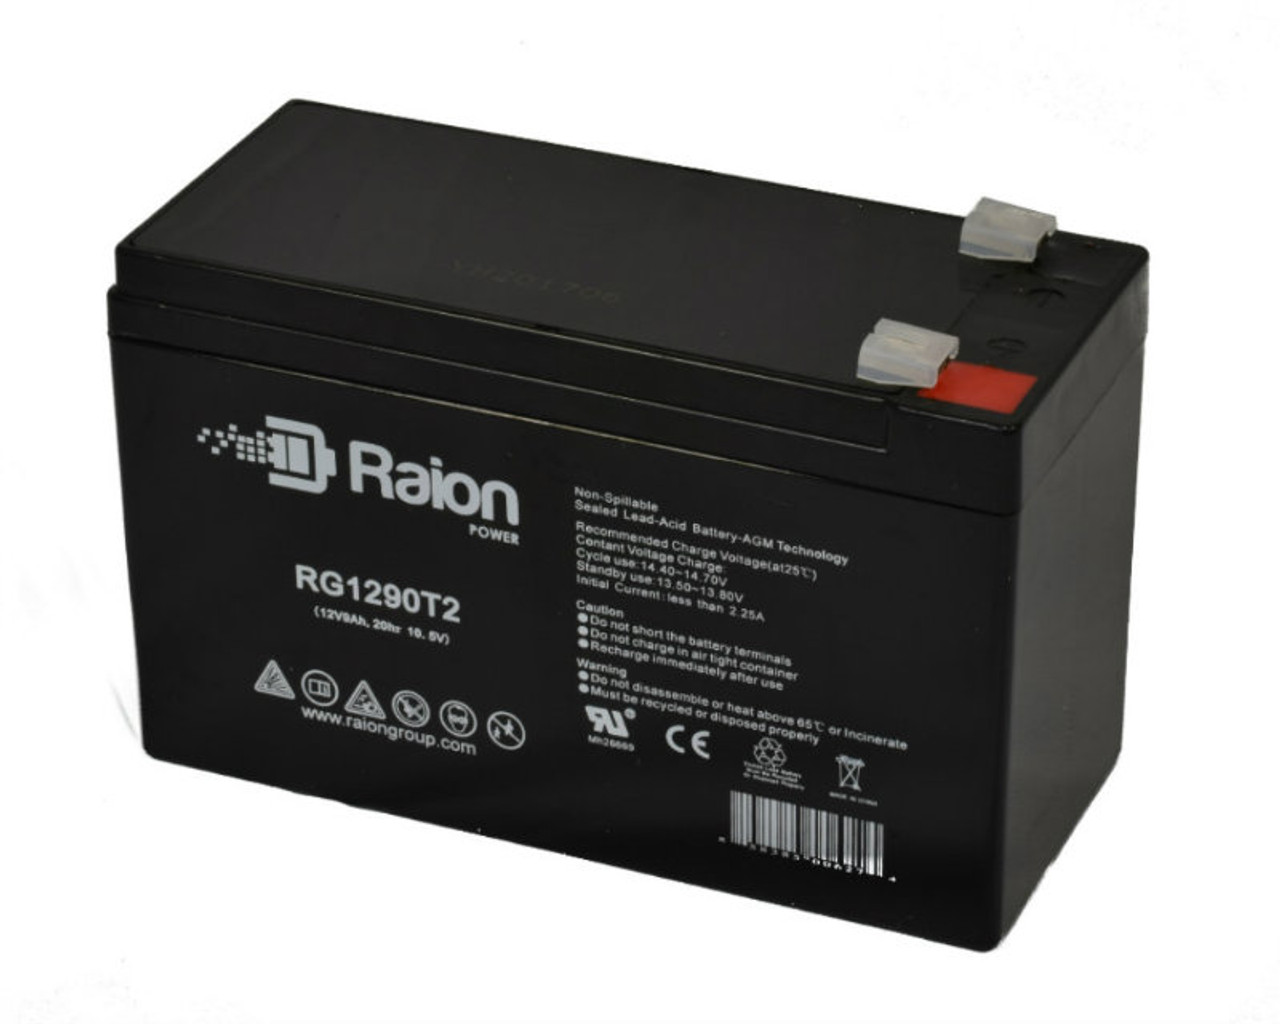 Raion Power RG1290T2 12V 9Ah AGM Battery for Rhino SLA9-12/T25